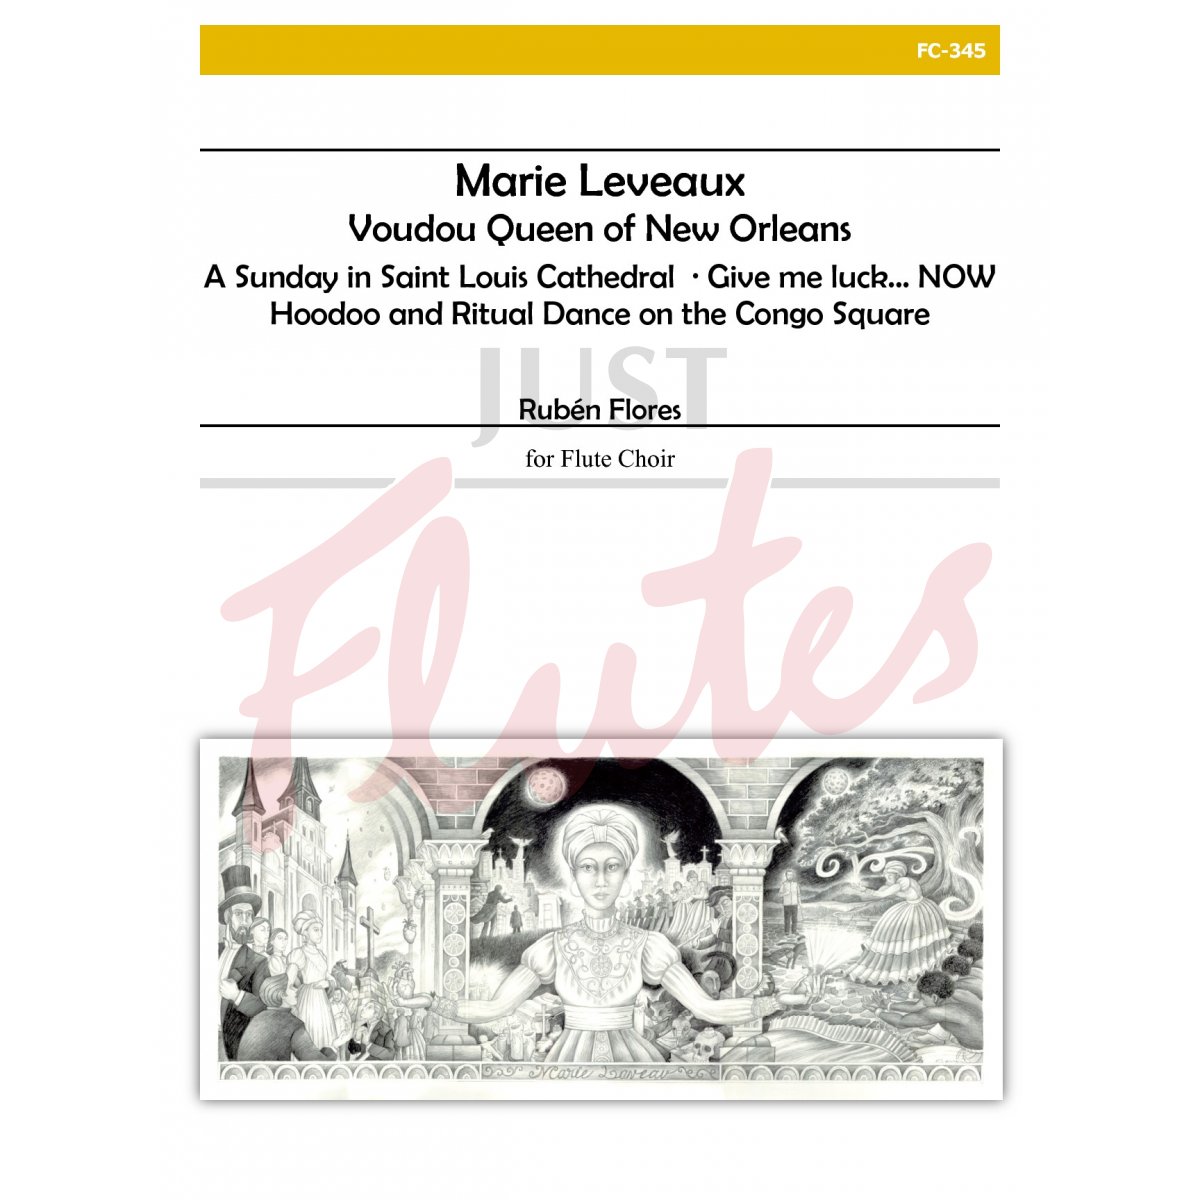 Marie Leveaux, Voudou Queen of New Orleans for Flute Choir